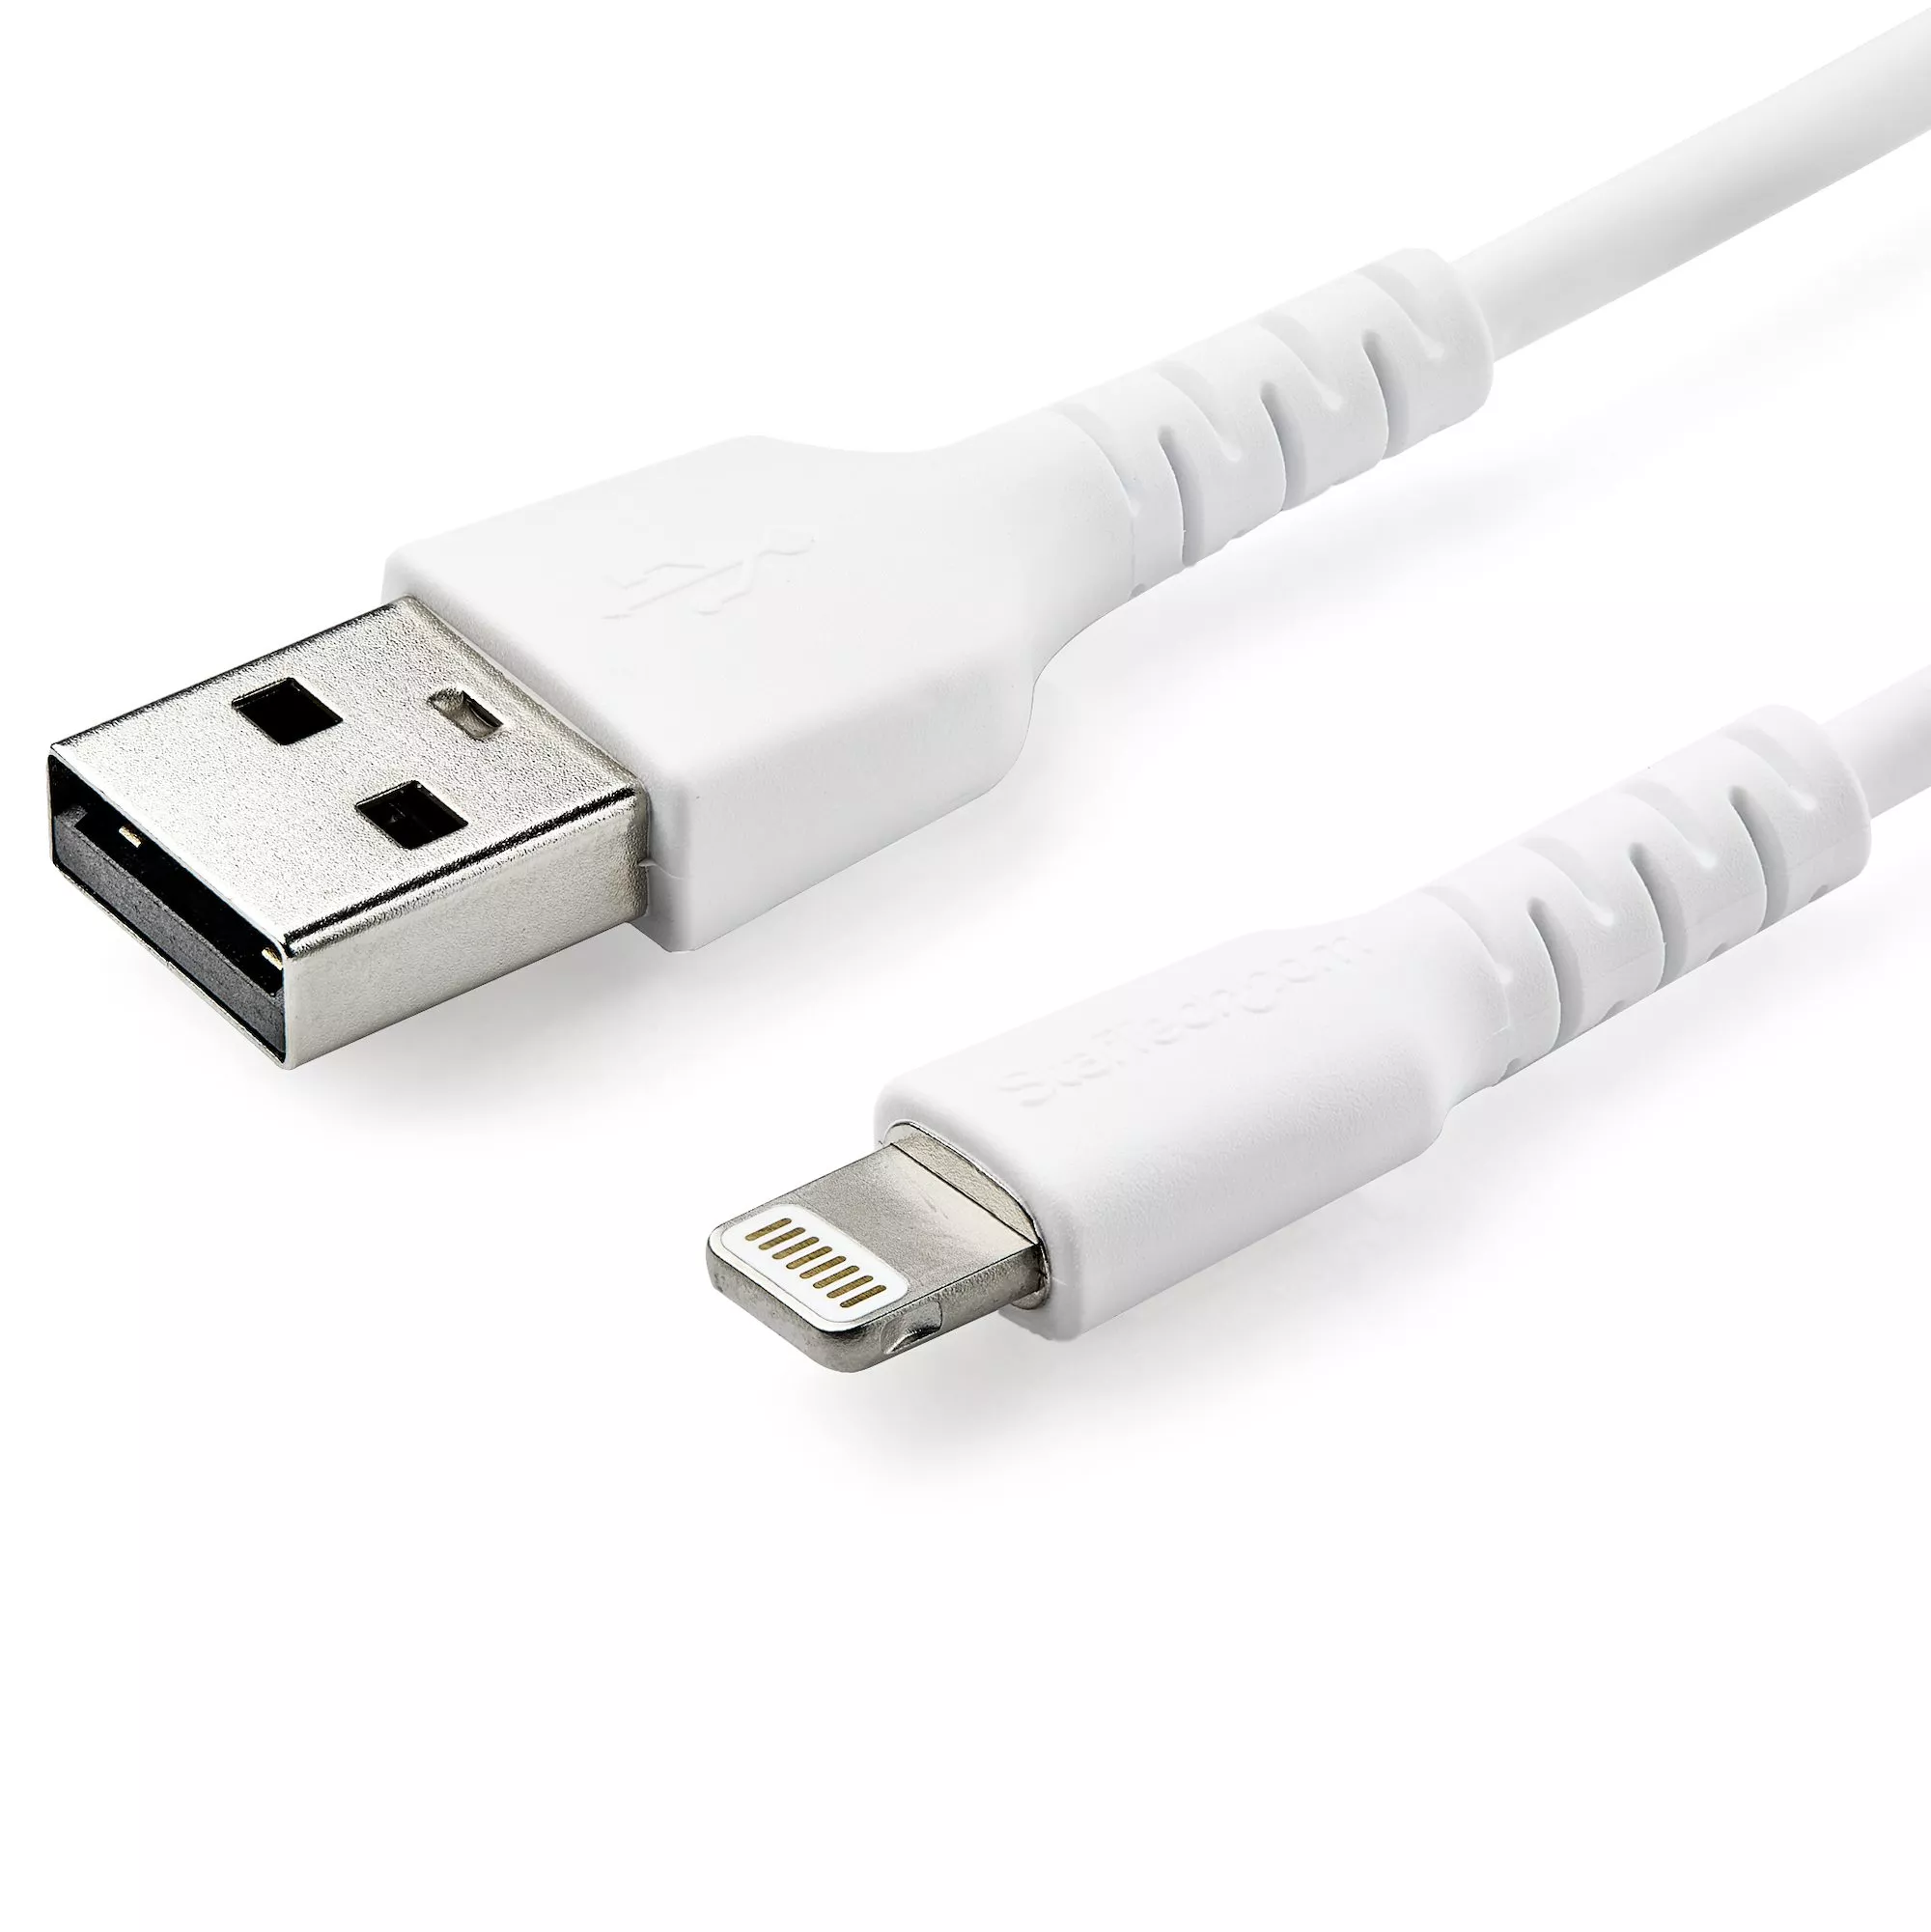 Achat StarTech.com Câble USB-A vers Lightning Blanc Robuste 2m au meilleur prix